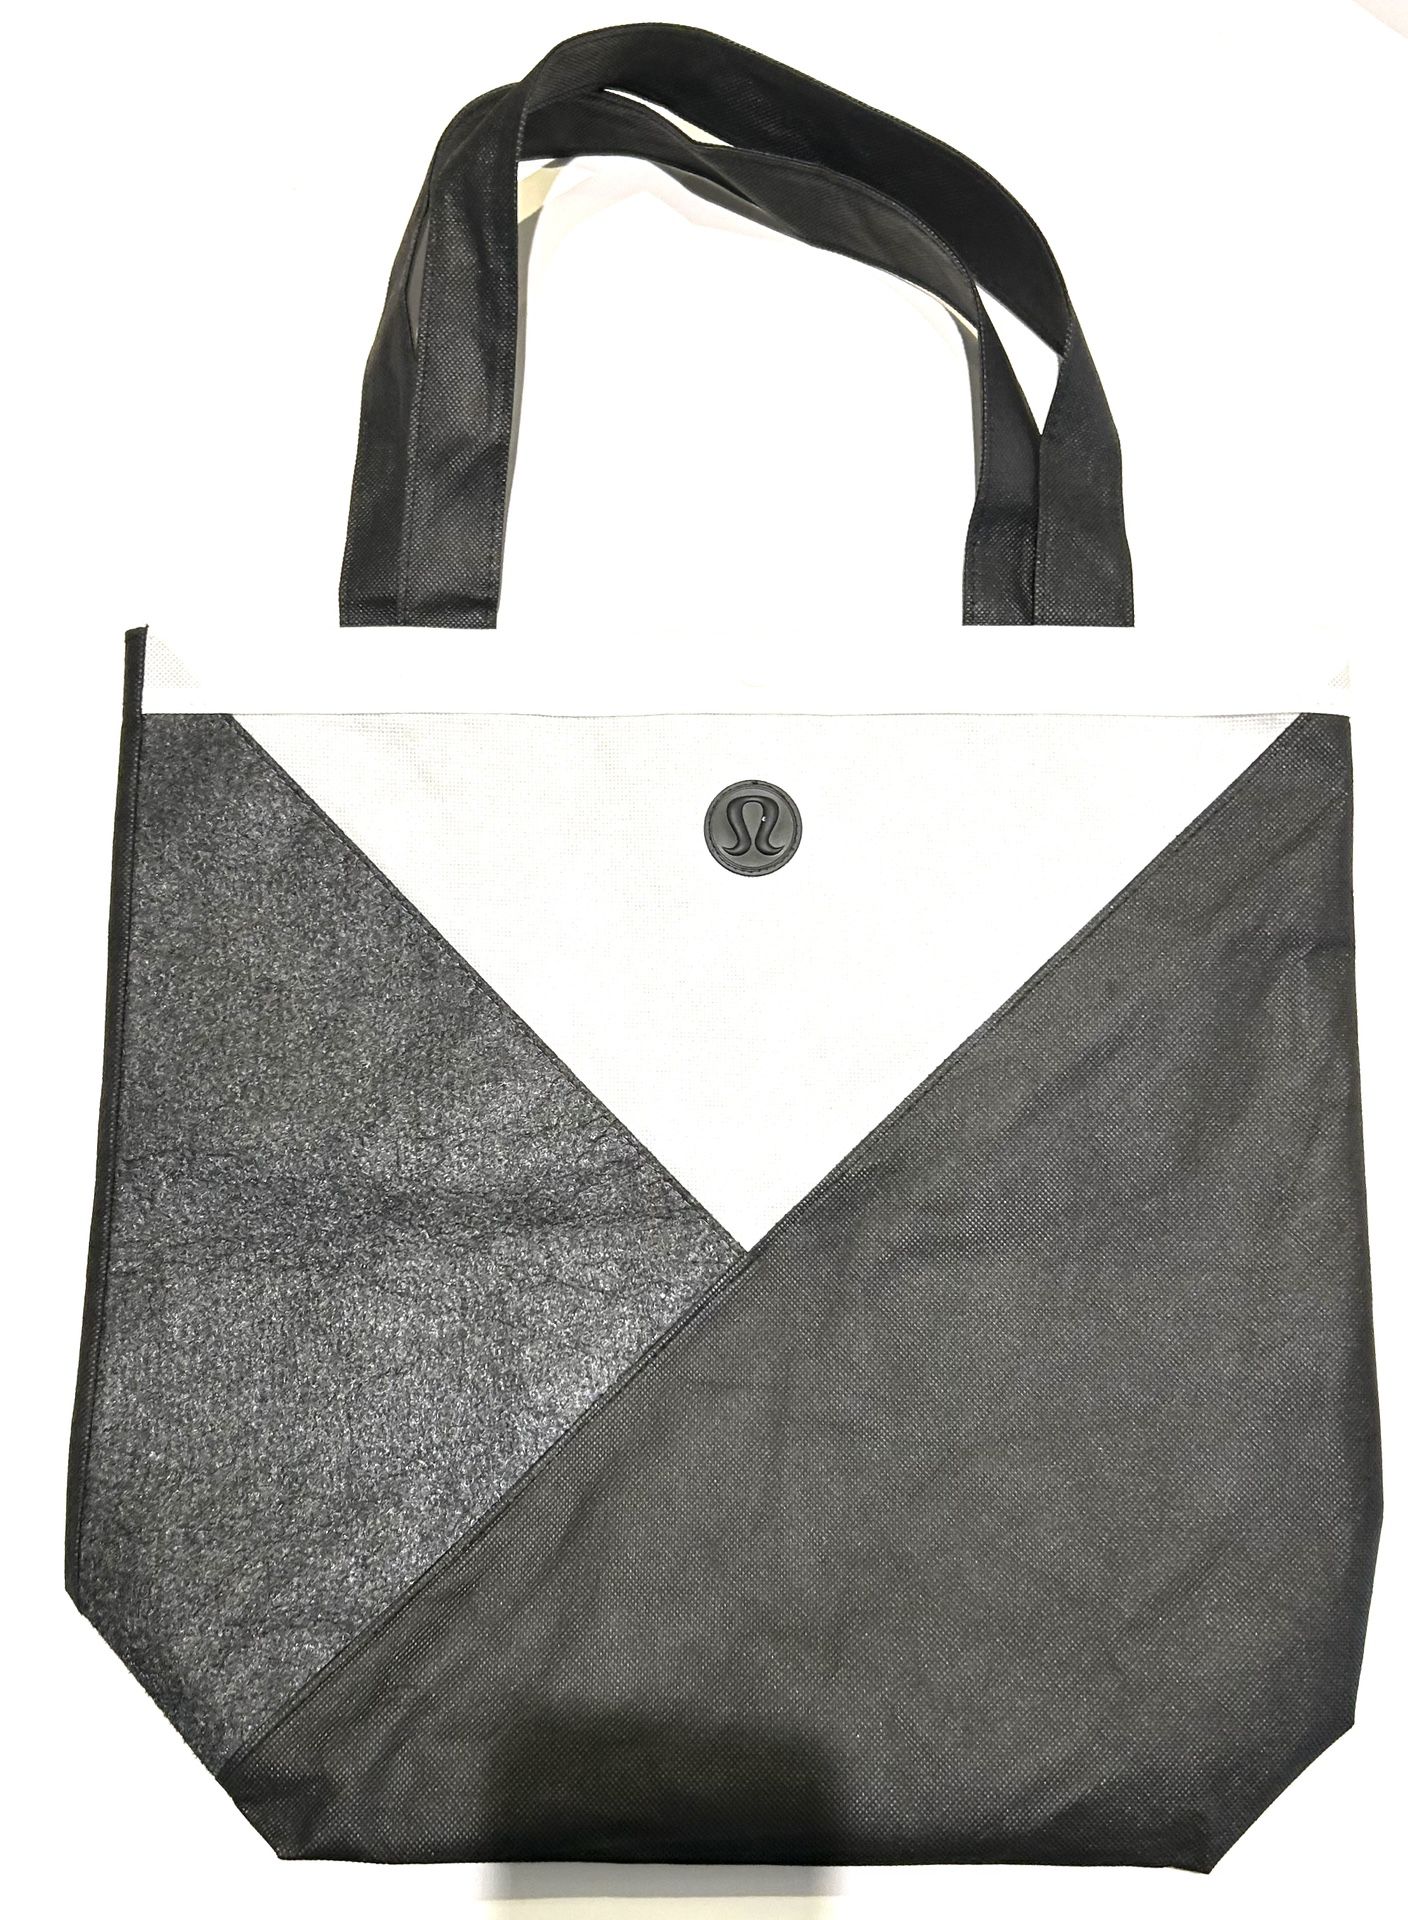 Lululemon large black/white/grey Reusable shopping bag 17”x18” Large